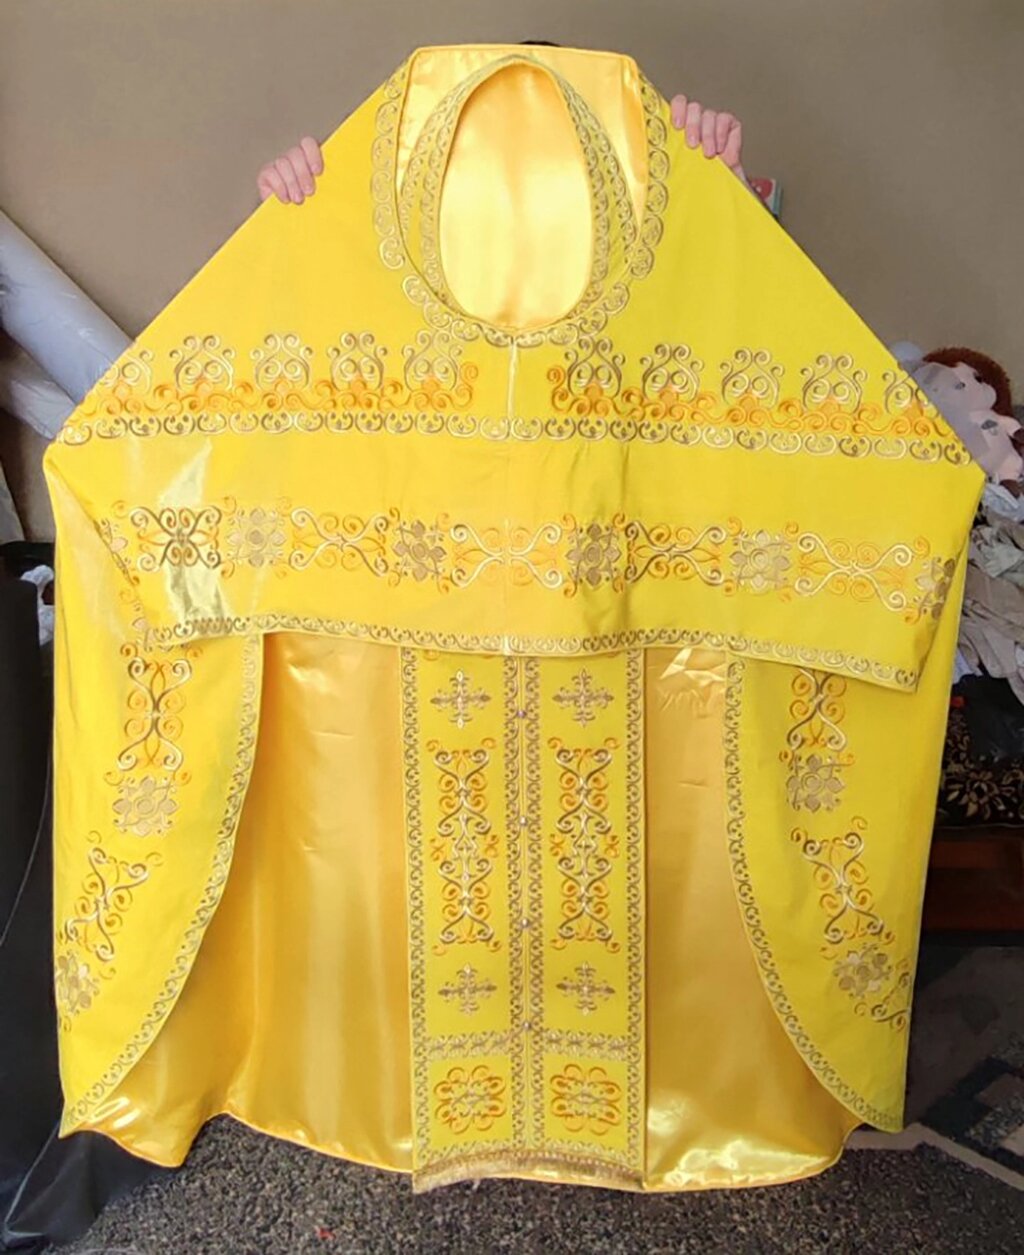 Одяг священика на замовлення за розмірами в майстерні від компанії Церковна крамниця "Покрова" - церковне начиння - фото 1